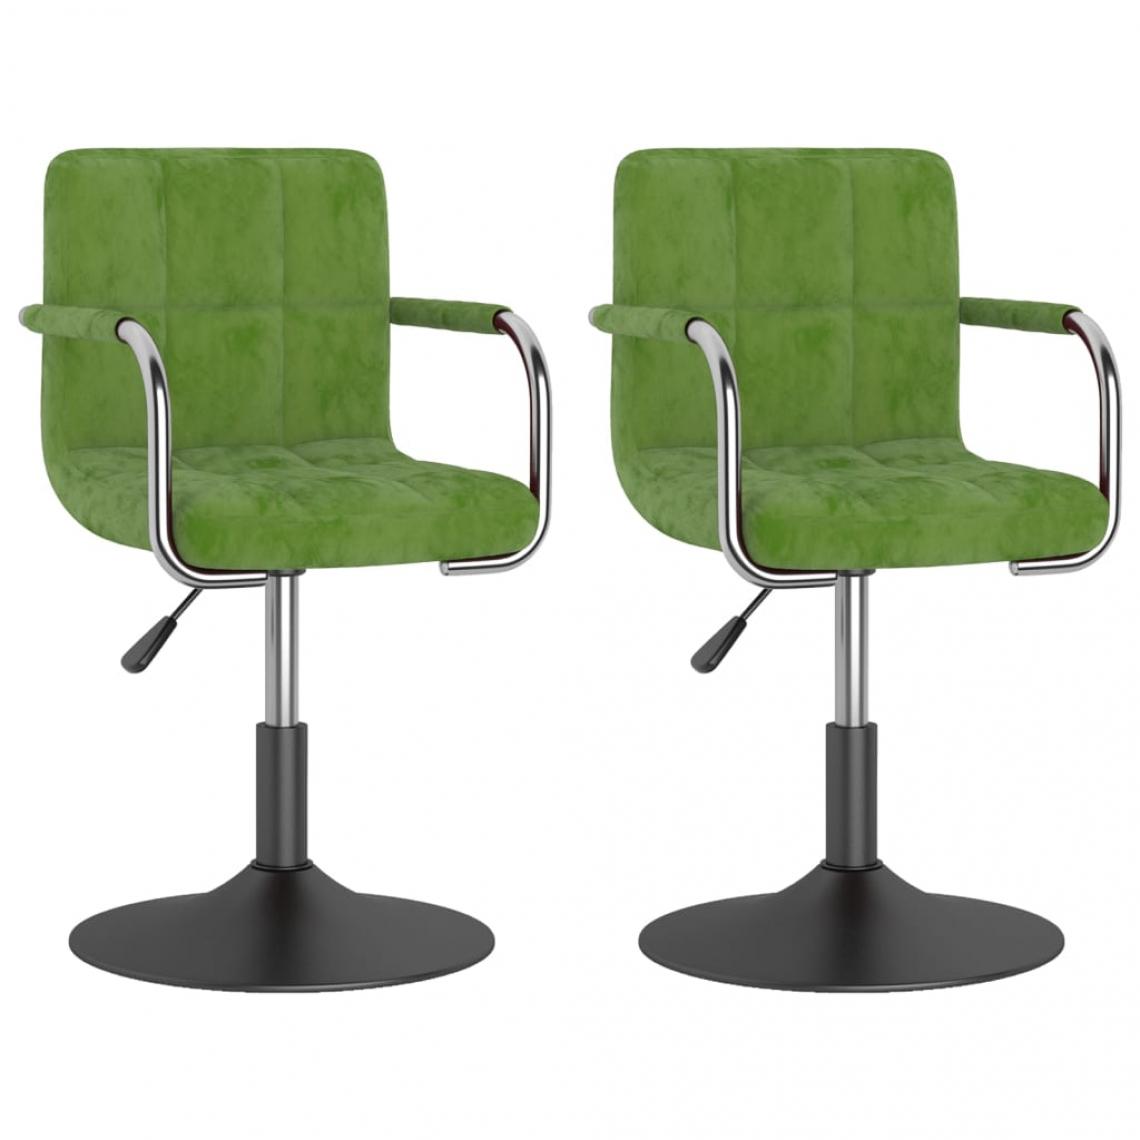 Decoshop26 - Lot de 2 chaises de salle à manger cuisine design moderne velours vert clair CDS021074 - Chaises